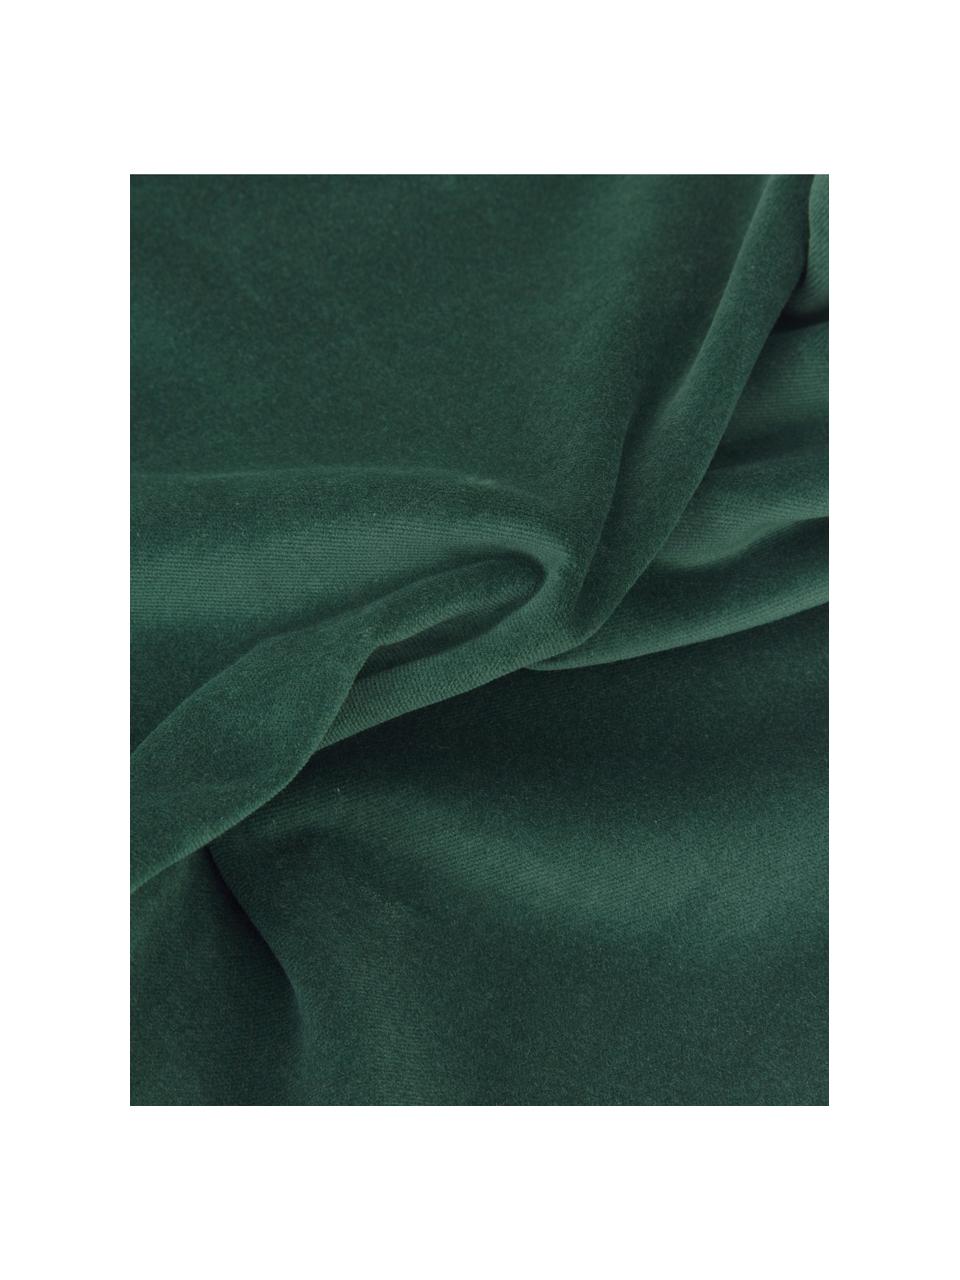 Housse de coussin rectangulaire velours vert émeraude Dana, 100 % velours de coton, Vert émeraude, larg. 30 x long. 50 cm